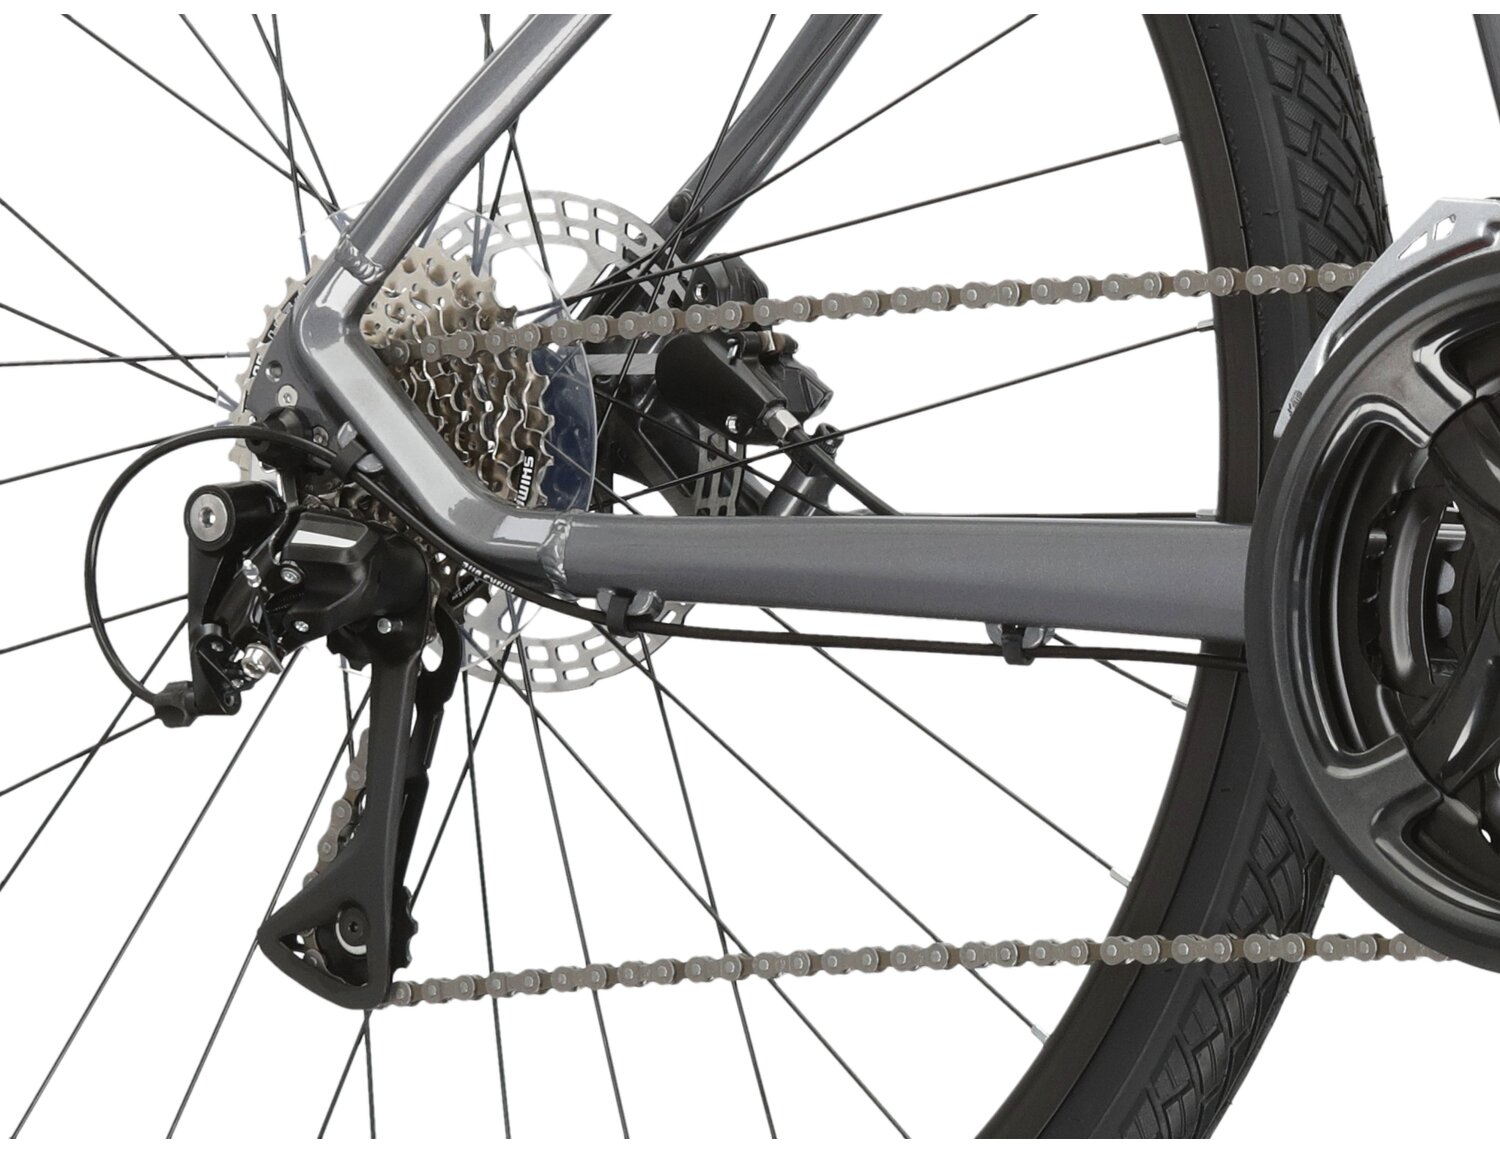  Tylna ośmiobiegowa przerzutka Shimano Acera M3020 oraz hydrauliczne hamulce tarczowe Shimano MT200 w rowerze crossowym KROSS Evado 4.0 